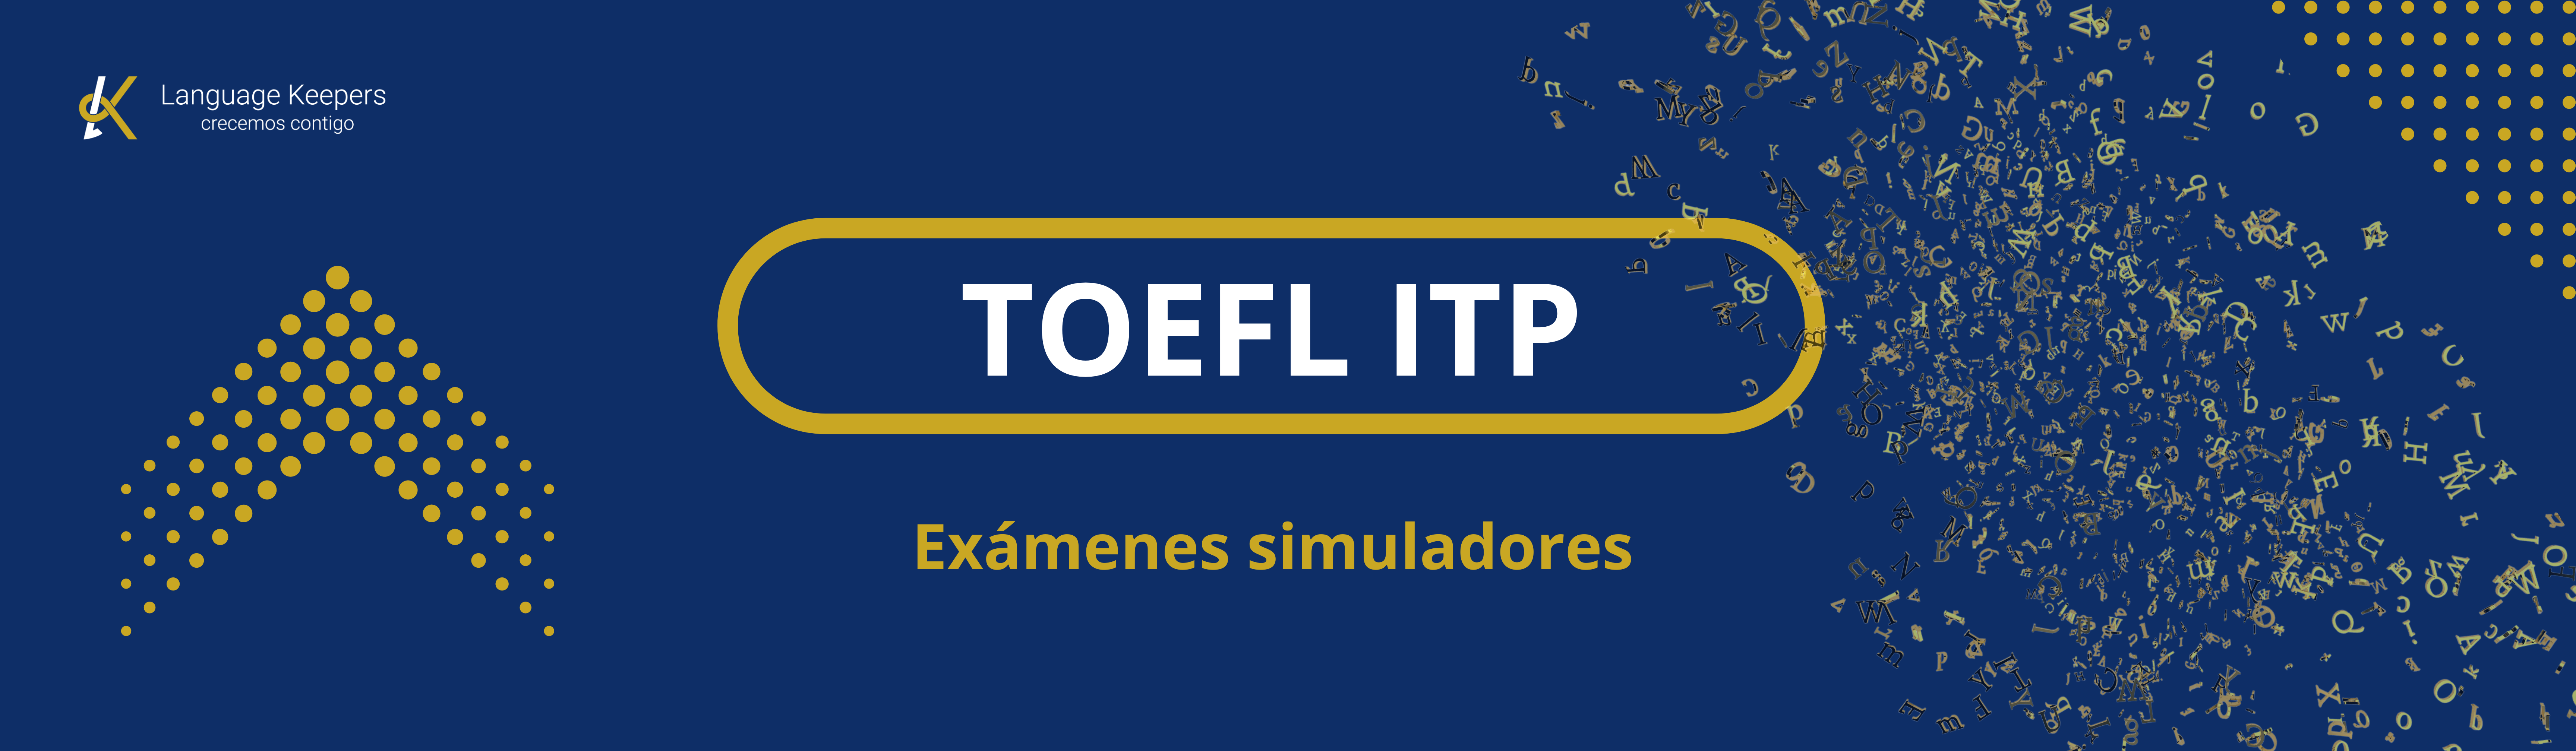 TOEFL ITP EXAMEN SIMULADORES